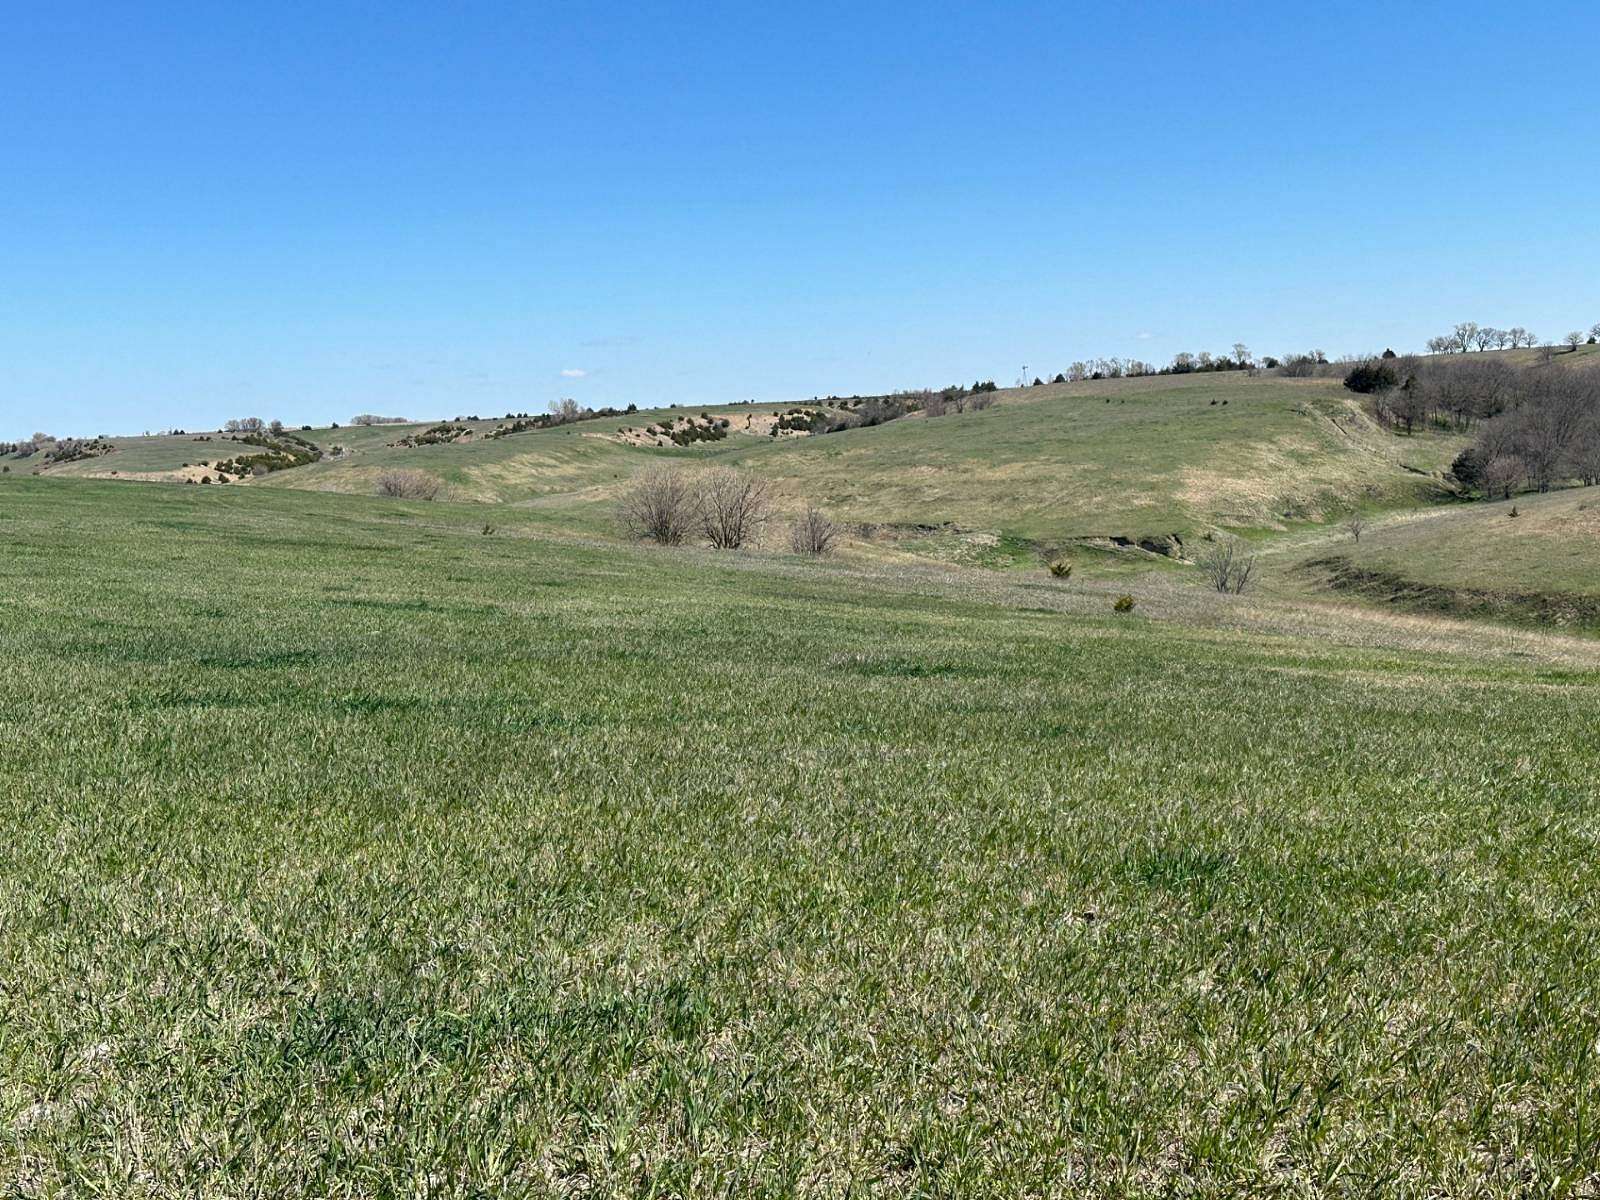 350 Acres of Recreational Land & Farm for Sale in St. Paul, Nebraska